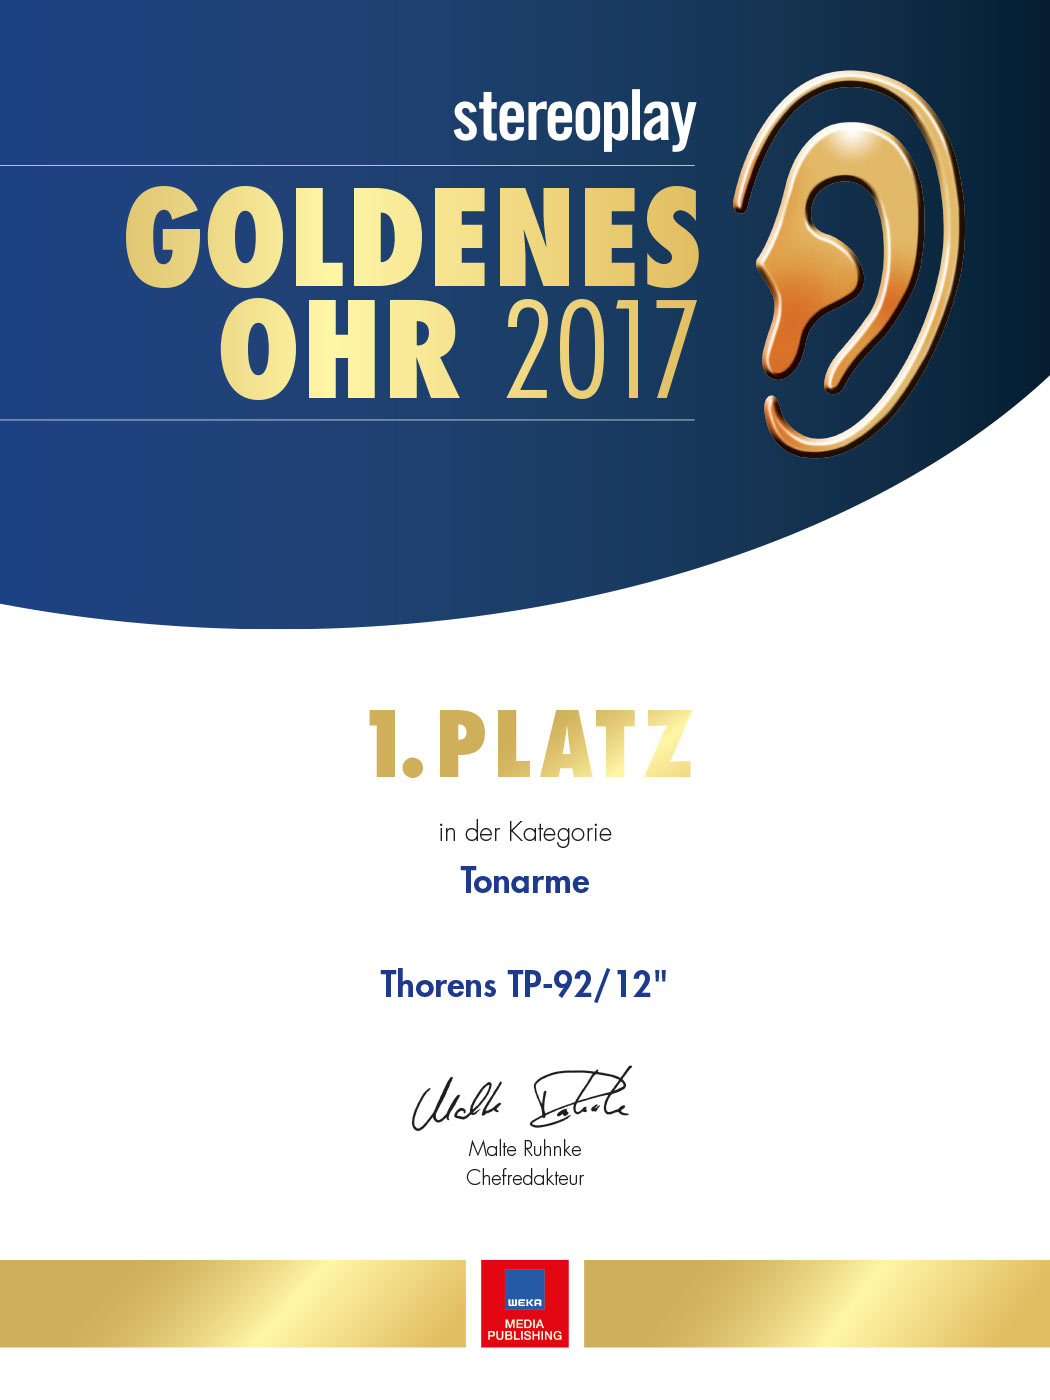 Award Goldenes Ohr 2017